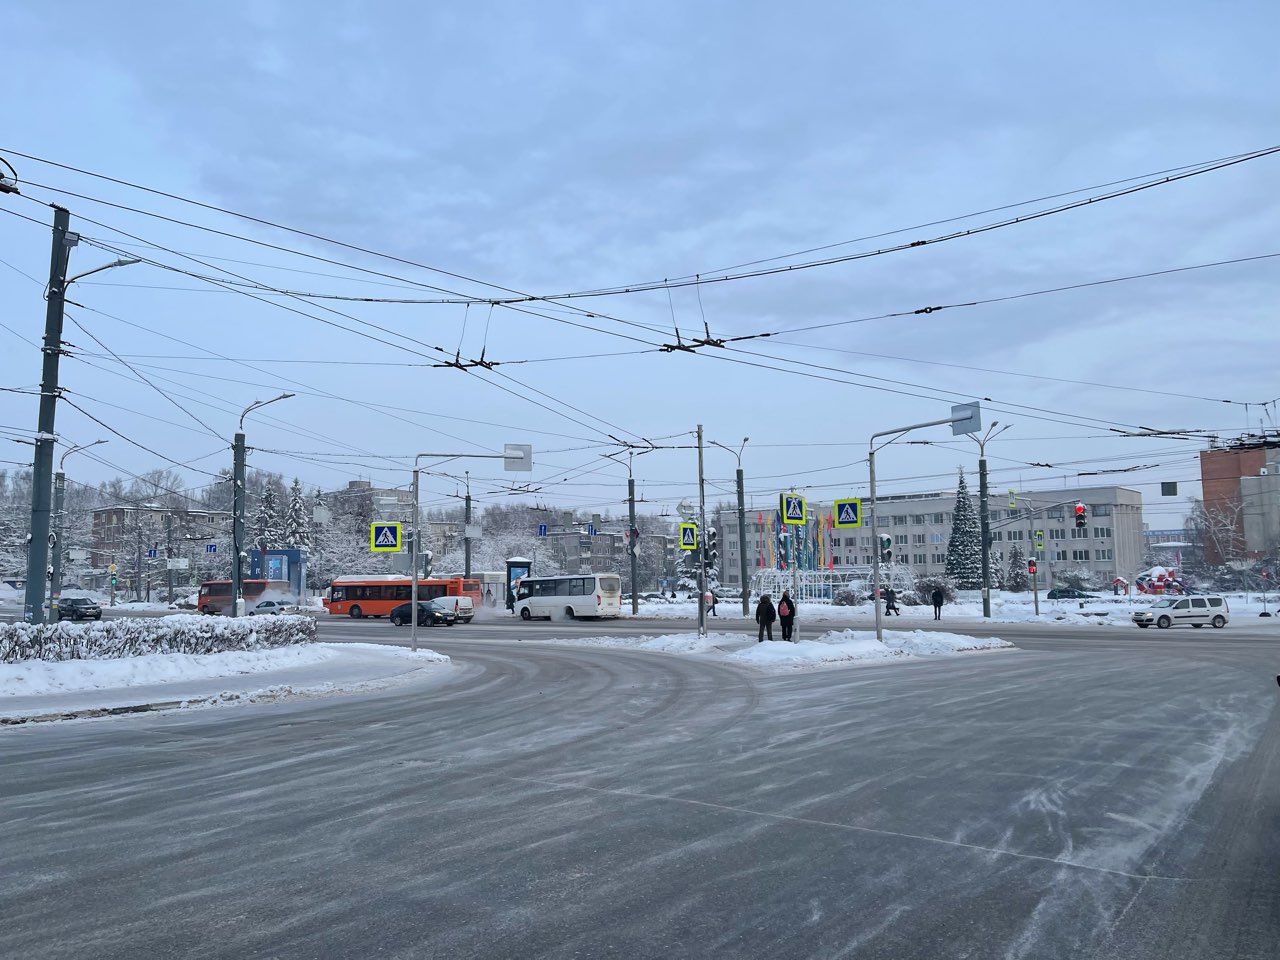 Горки, лавки и деревья: что ждет общественные пространства Нижнего Новгорода в 2022 году  - фото 7